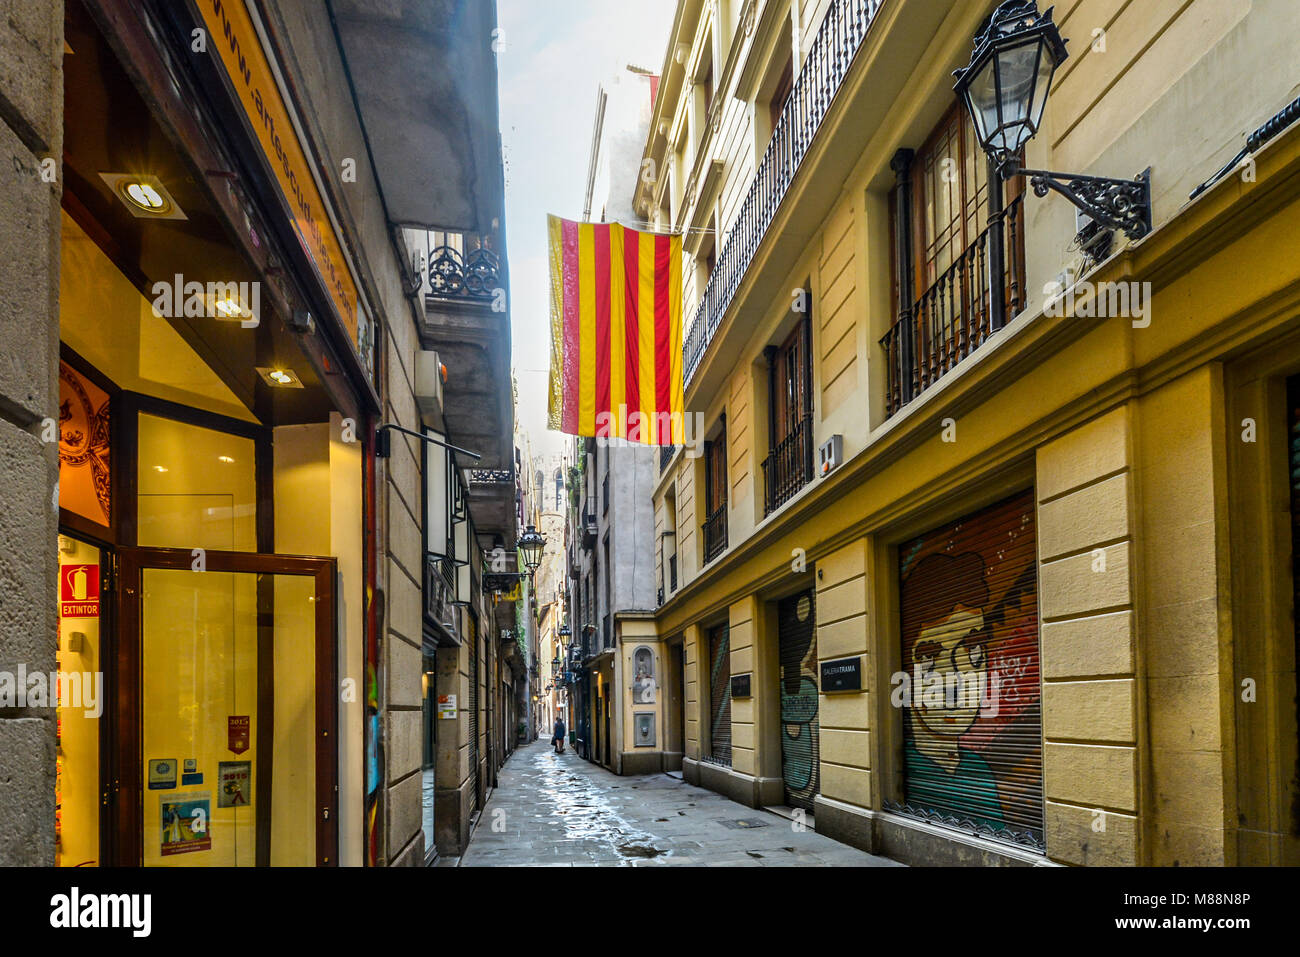 Le bar rayé jaune et rouge du drapeau catalan vole depuis un balcon dans le quartier gothique de Barcelone Espagne Banque D'Images